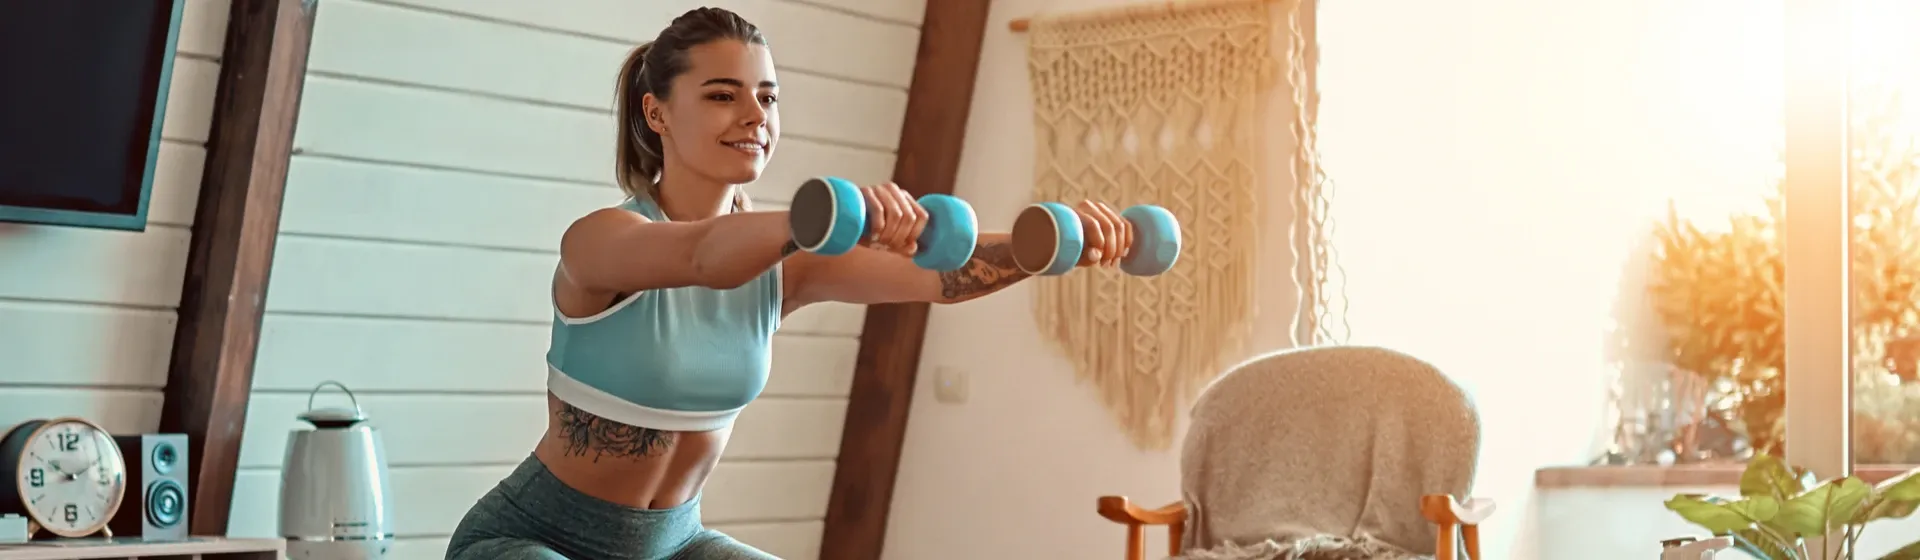 Musculação em casa: equipamentos e exercícios para treinar em casa